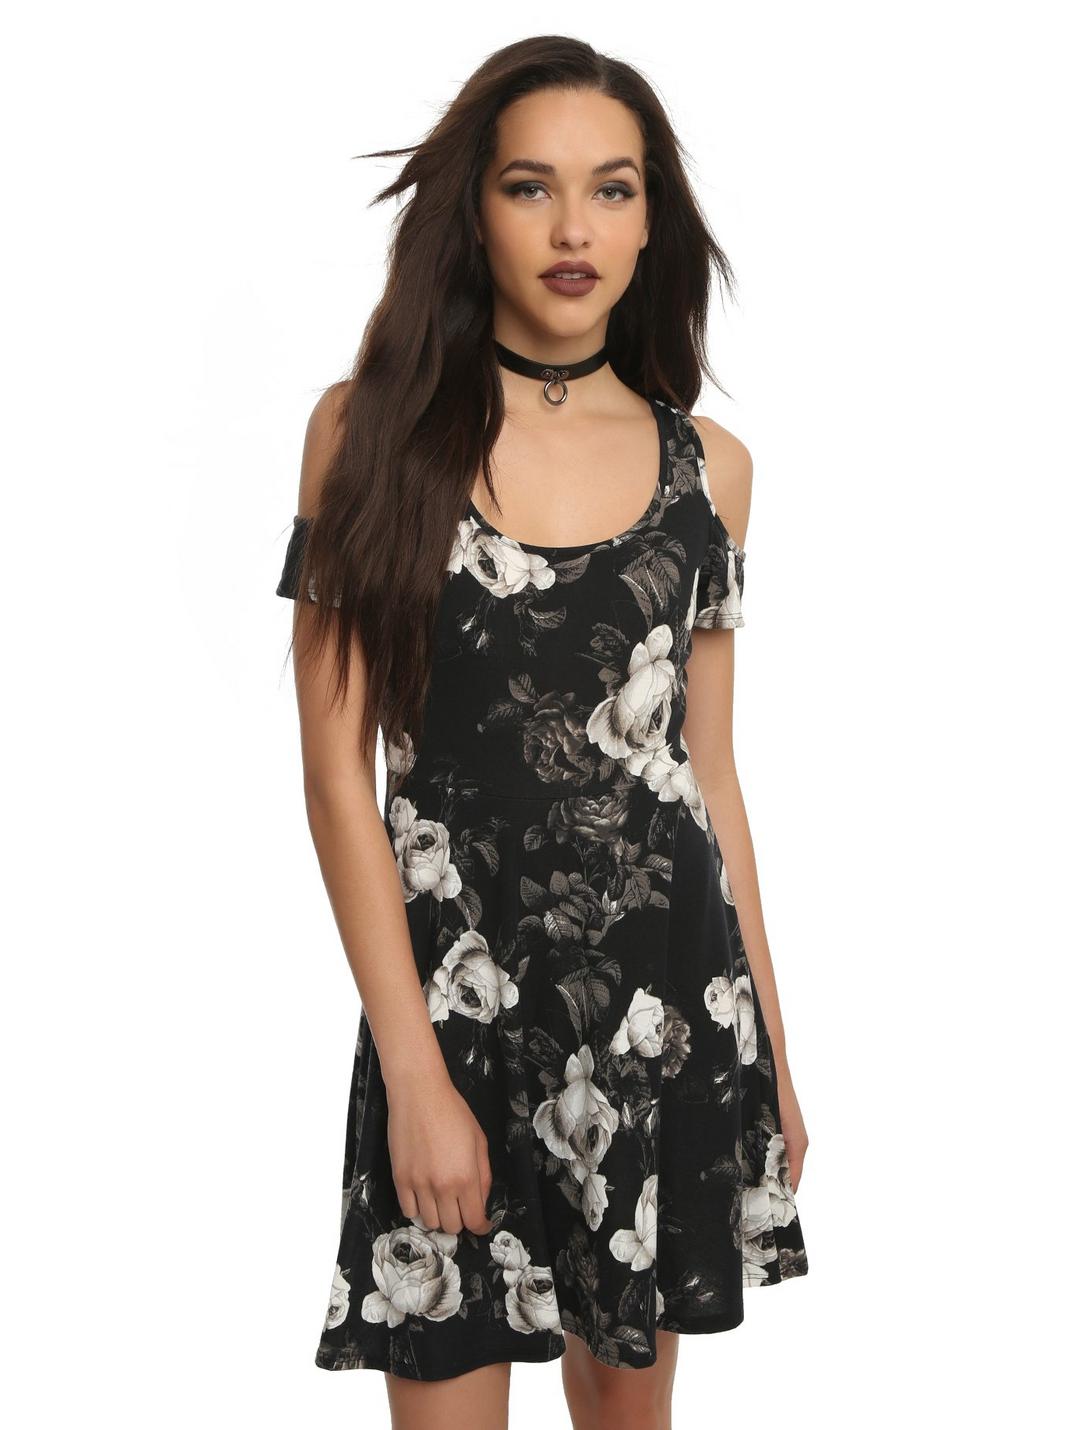 Floral Black And White Print Cold Shoulder Dress, BLACK, hi-res